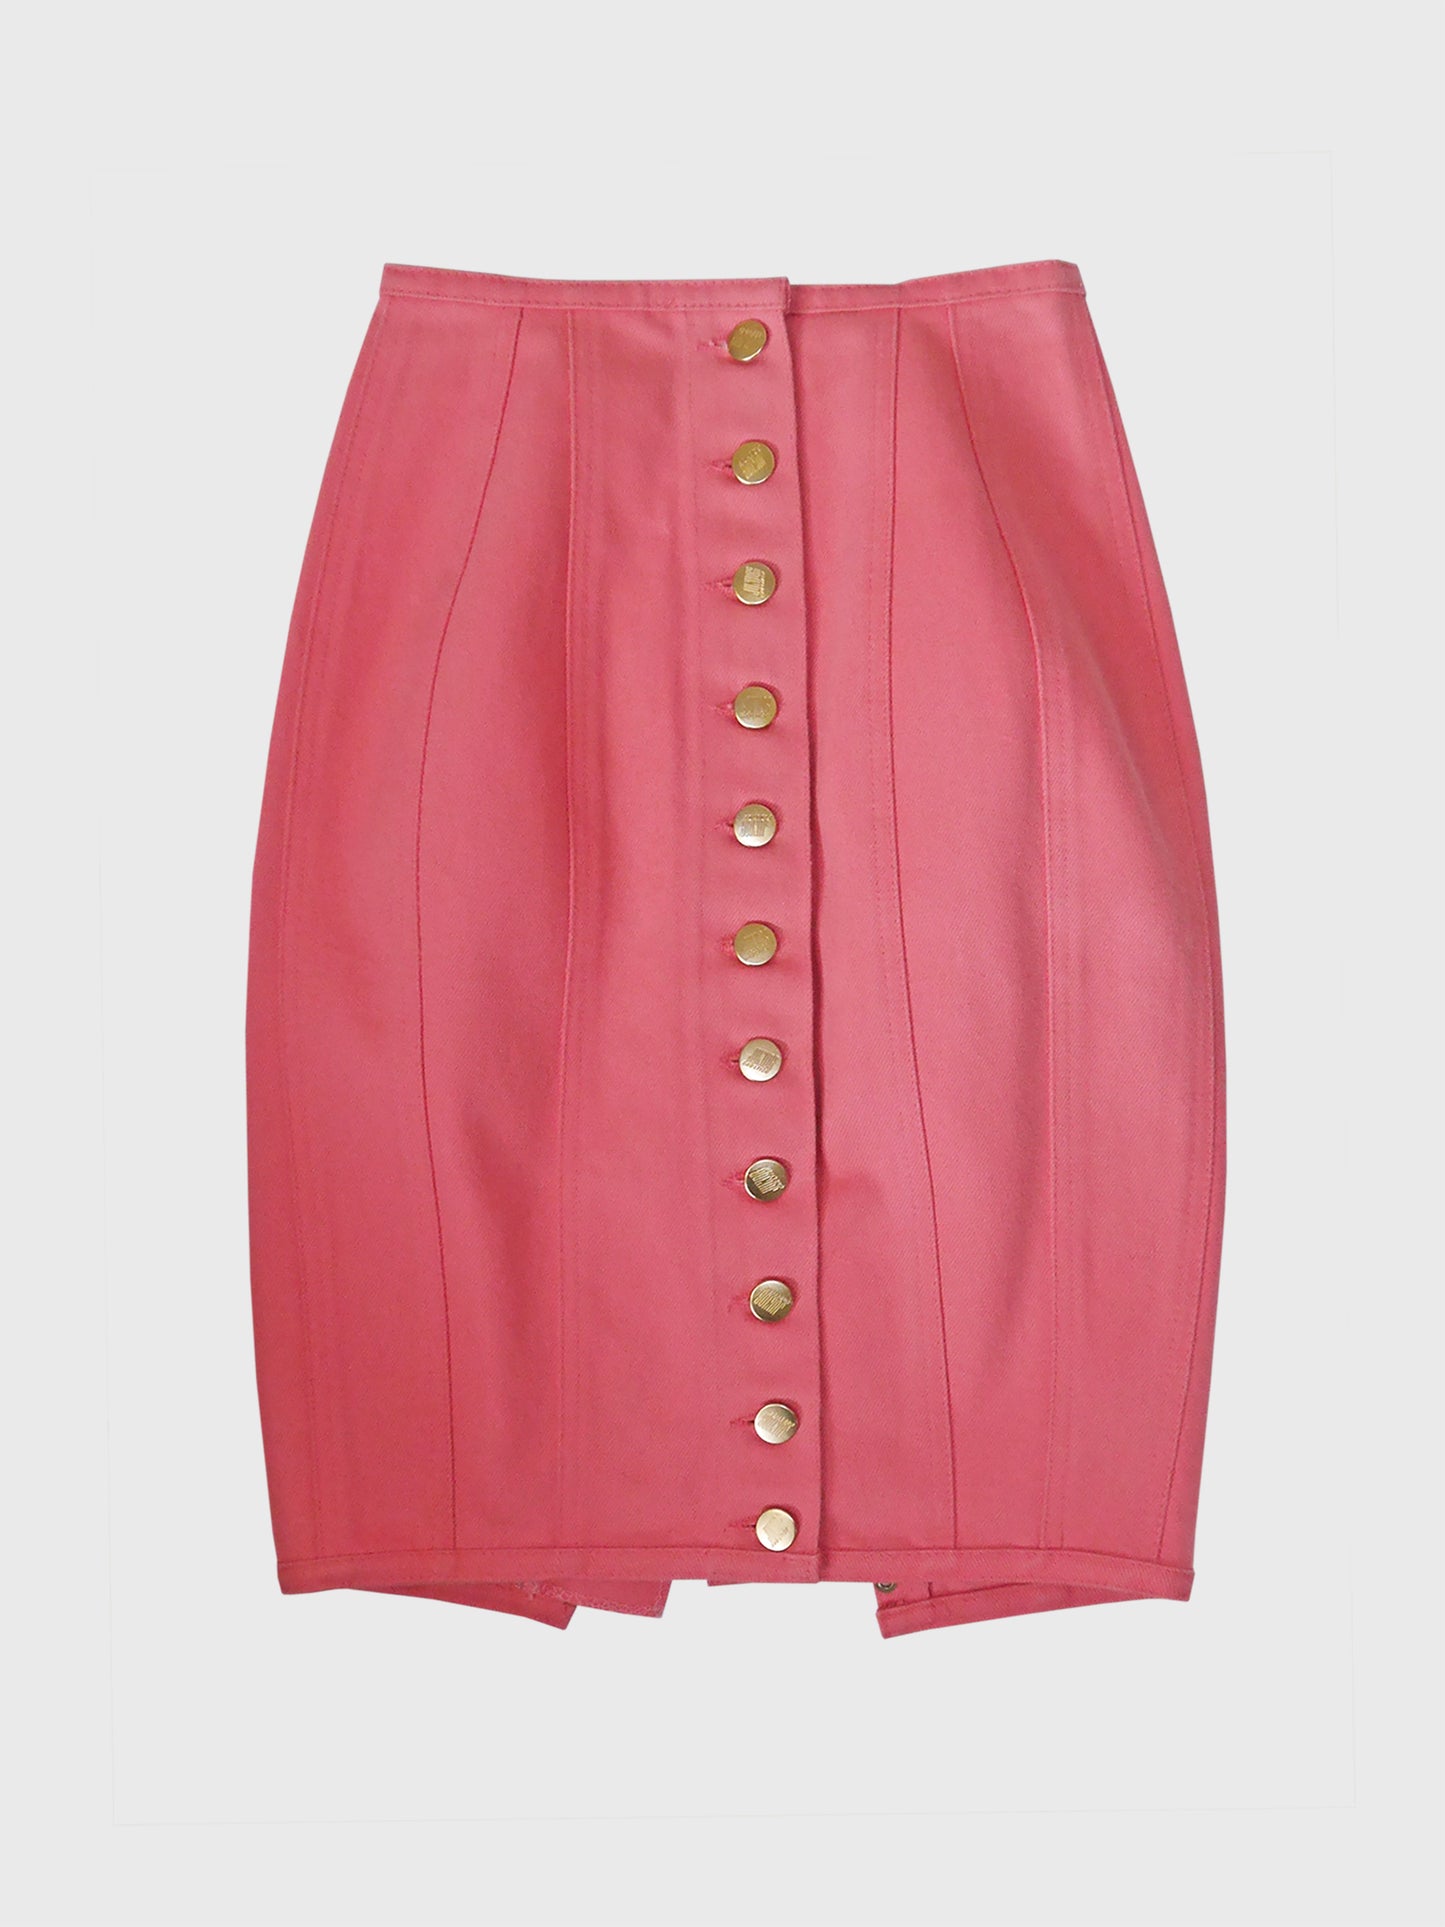 JEAN PAUL GAULTIER Vintage Lace-Up Denim Skirt